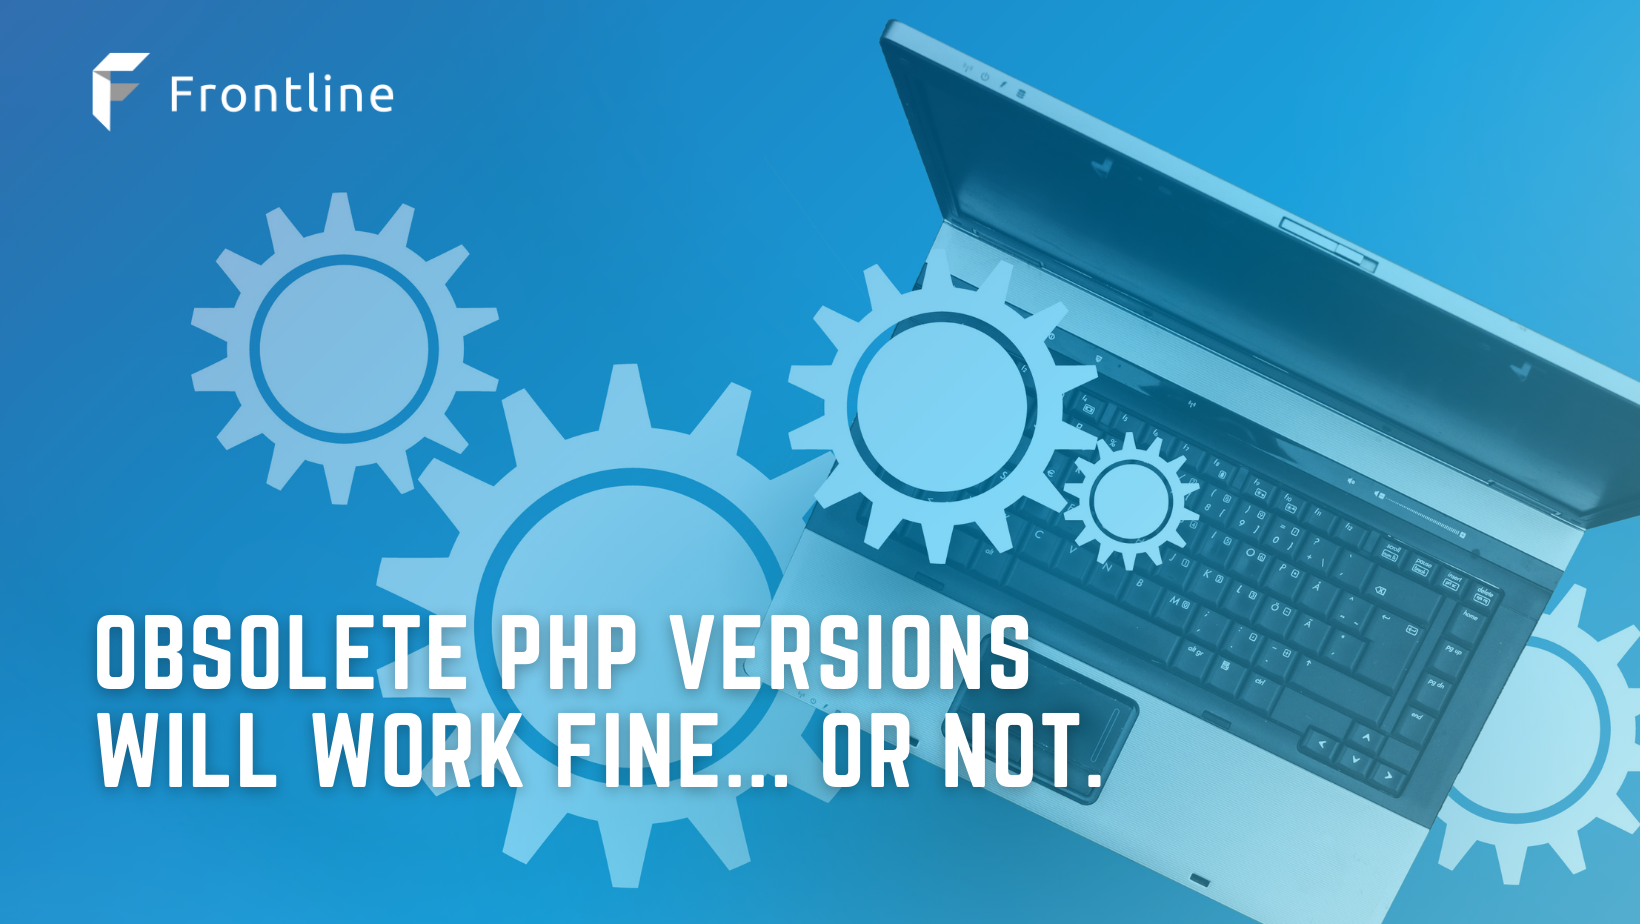 Bạn đang tìm kiếm thông tin về việc sử dụng PHP lỗi thời trong các tổ chức? Đừng lo lắng, chúng tôi có tất cả những gì bạn cần. Hãy xem hình ảnh liên quan để tìm hiểu về những hậu quả khó lường của việc sử dụng một phiên bản PHP lỗi thời.